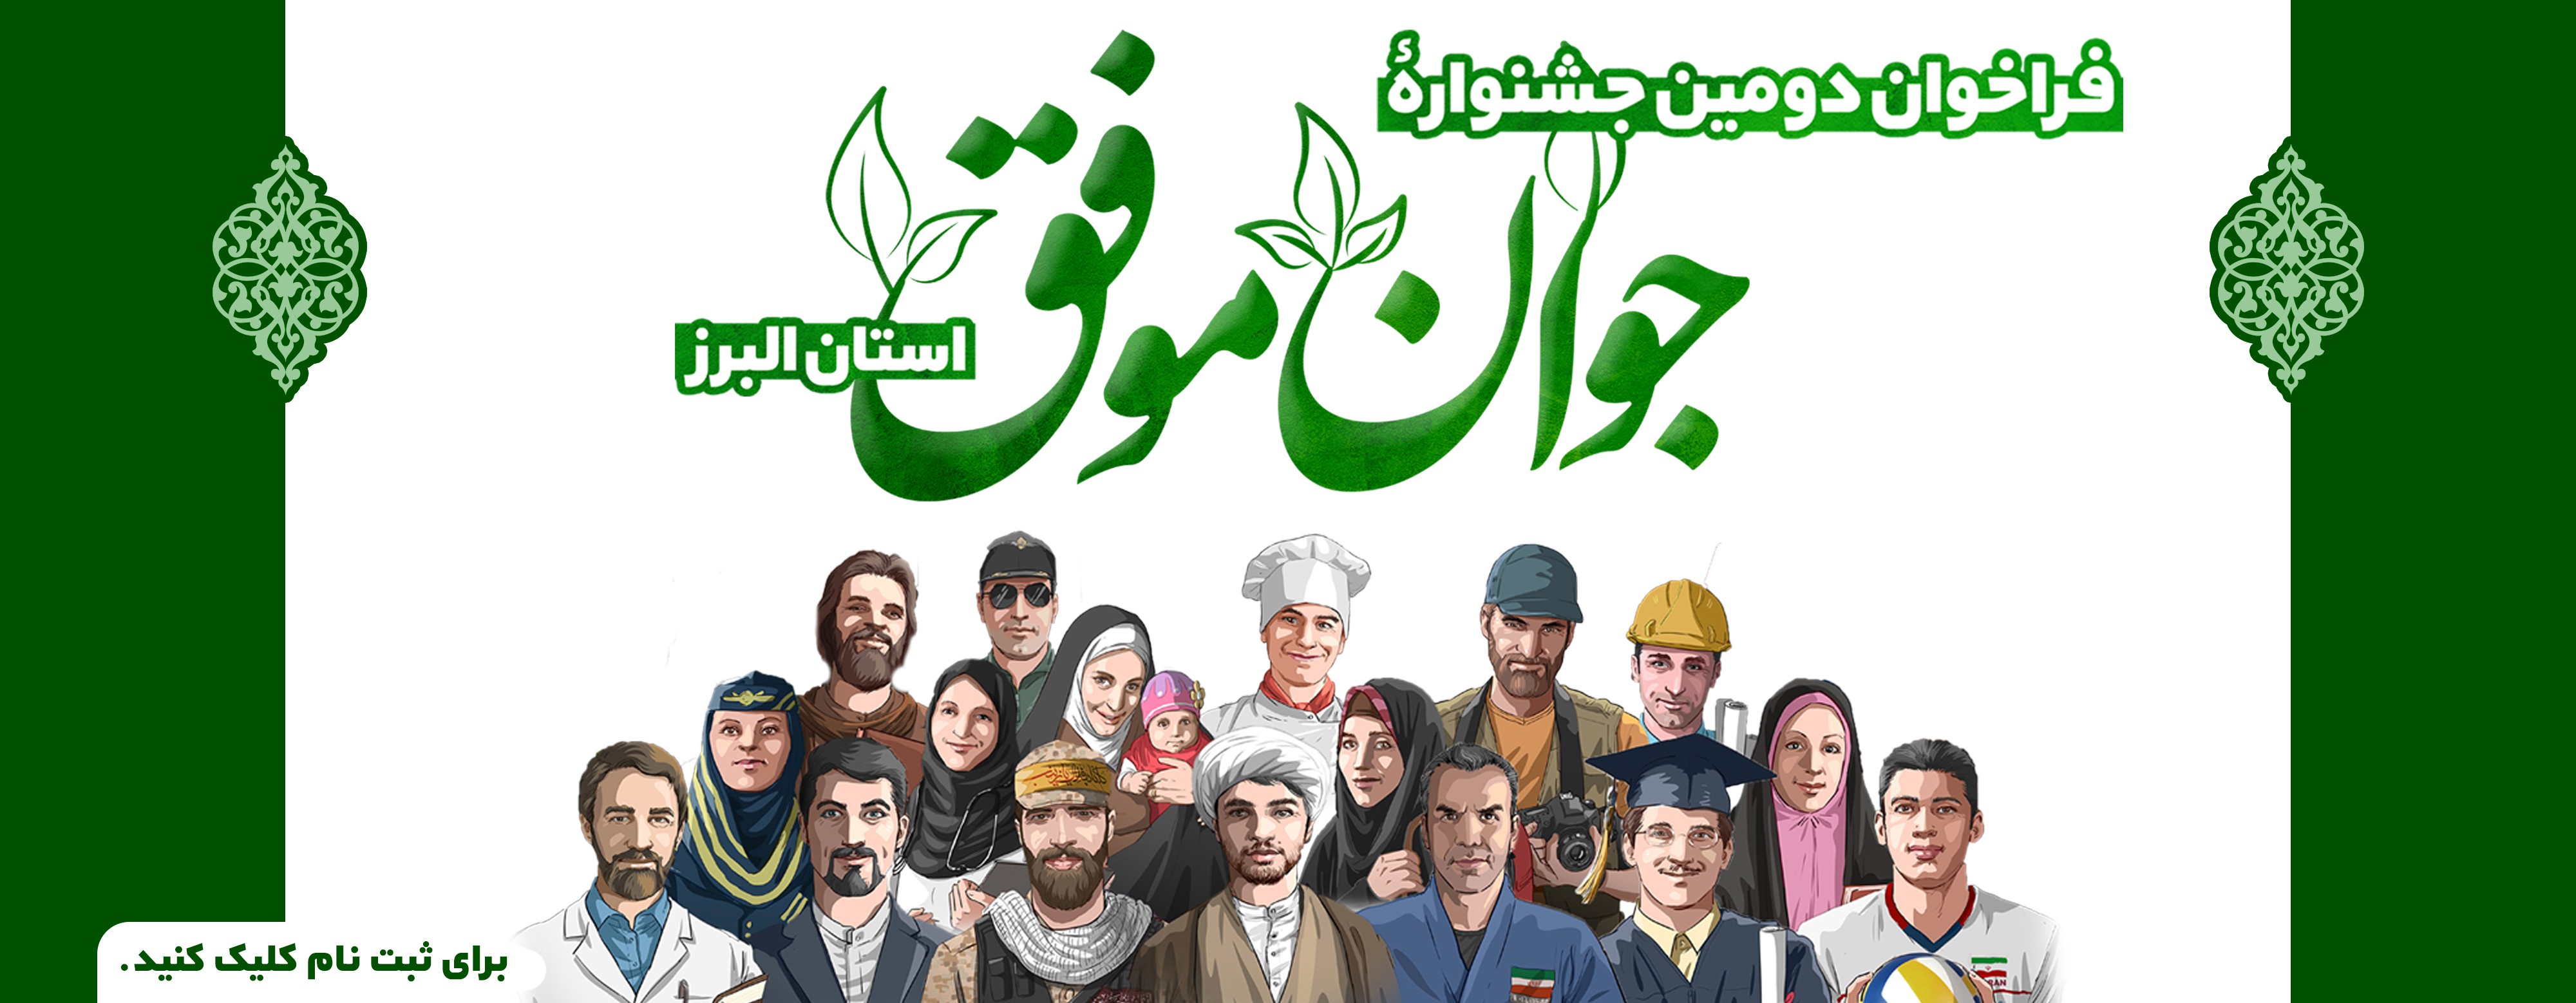 فراخوان دومین جشنواره «جوان موفق» استان البرز منتشر شد